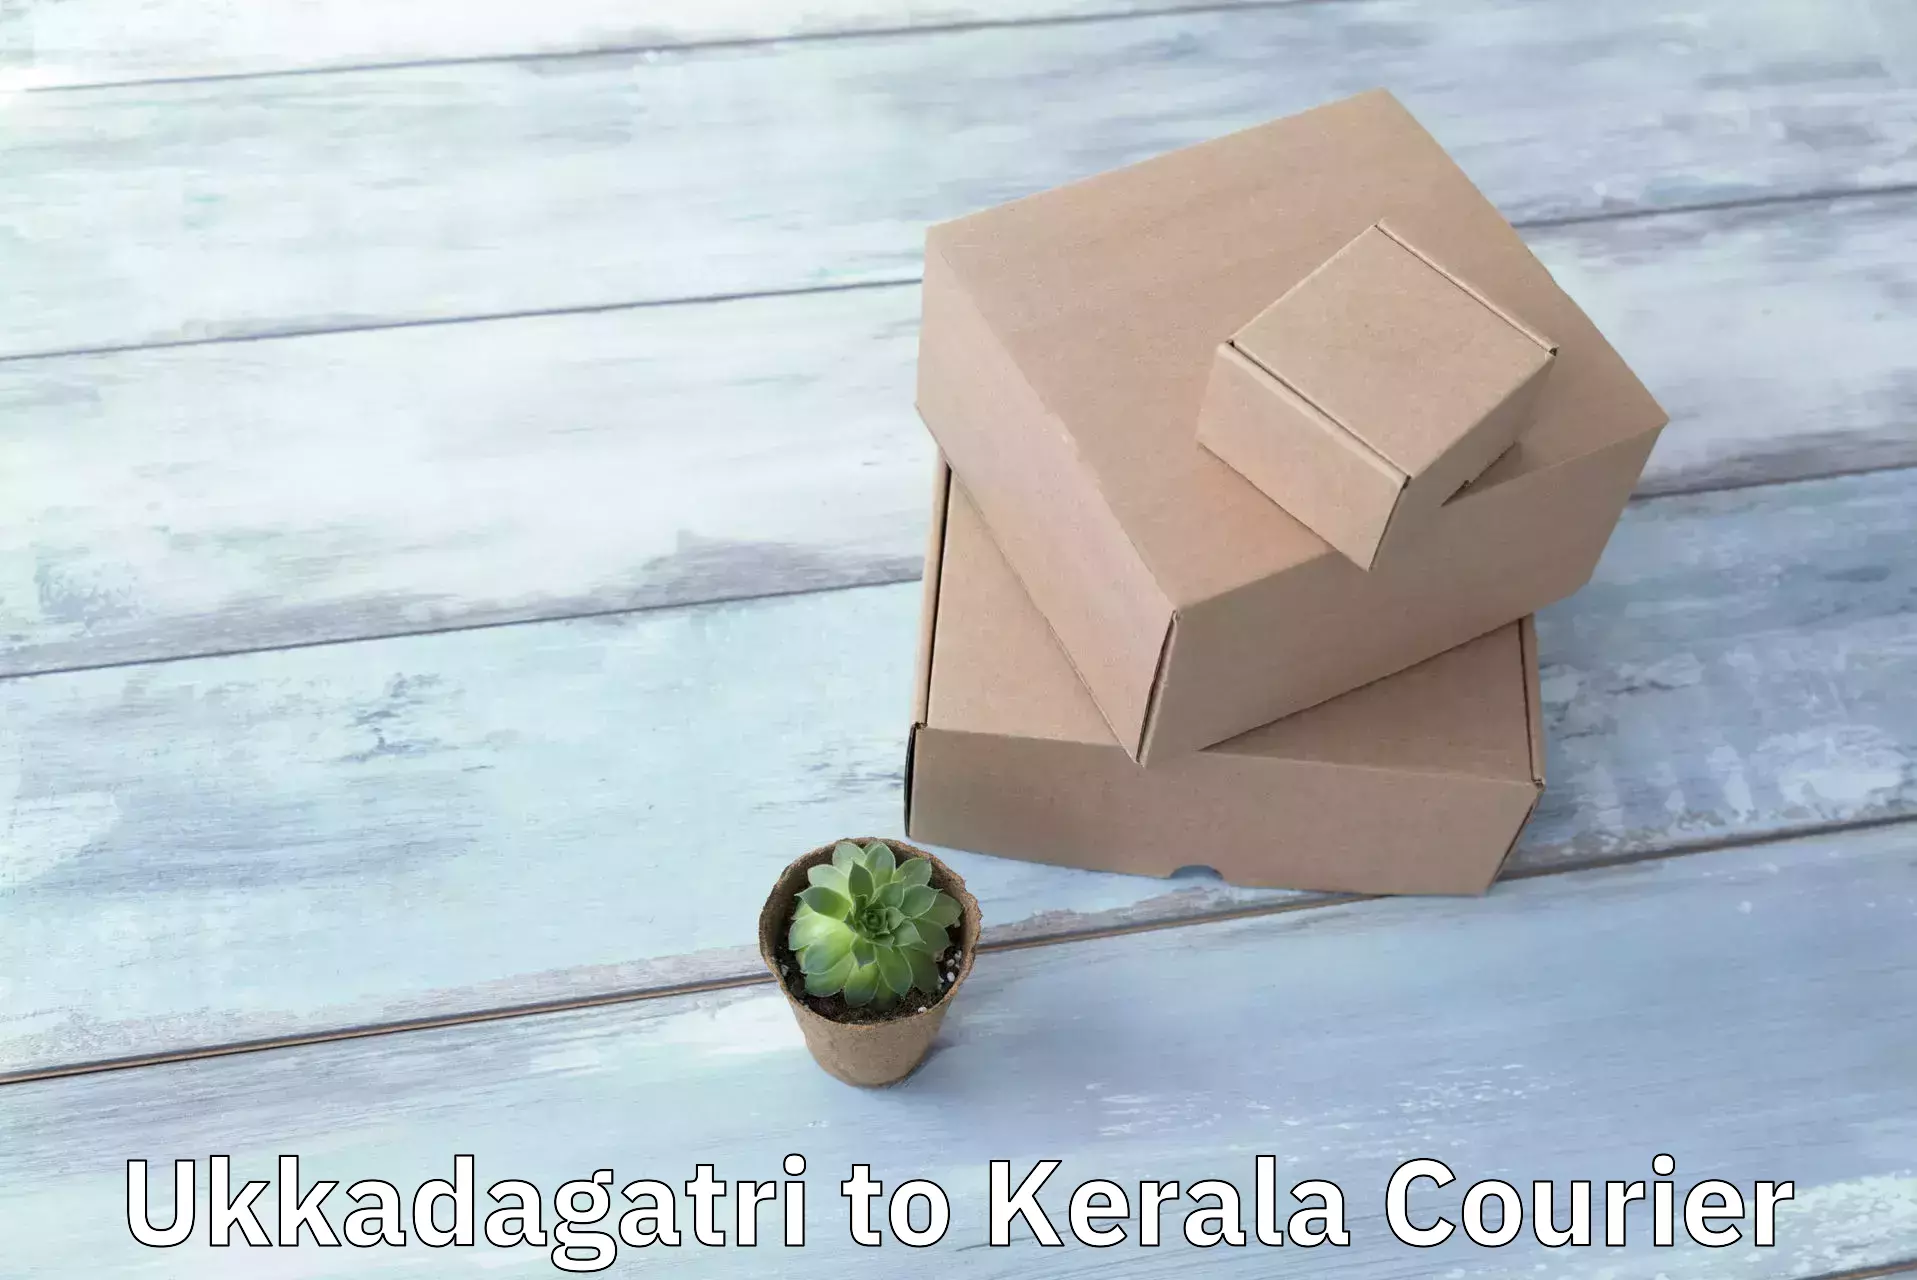 Advanced parcel tracking Ukkadagatri to Kakkayam